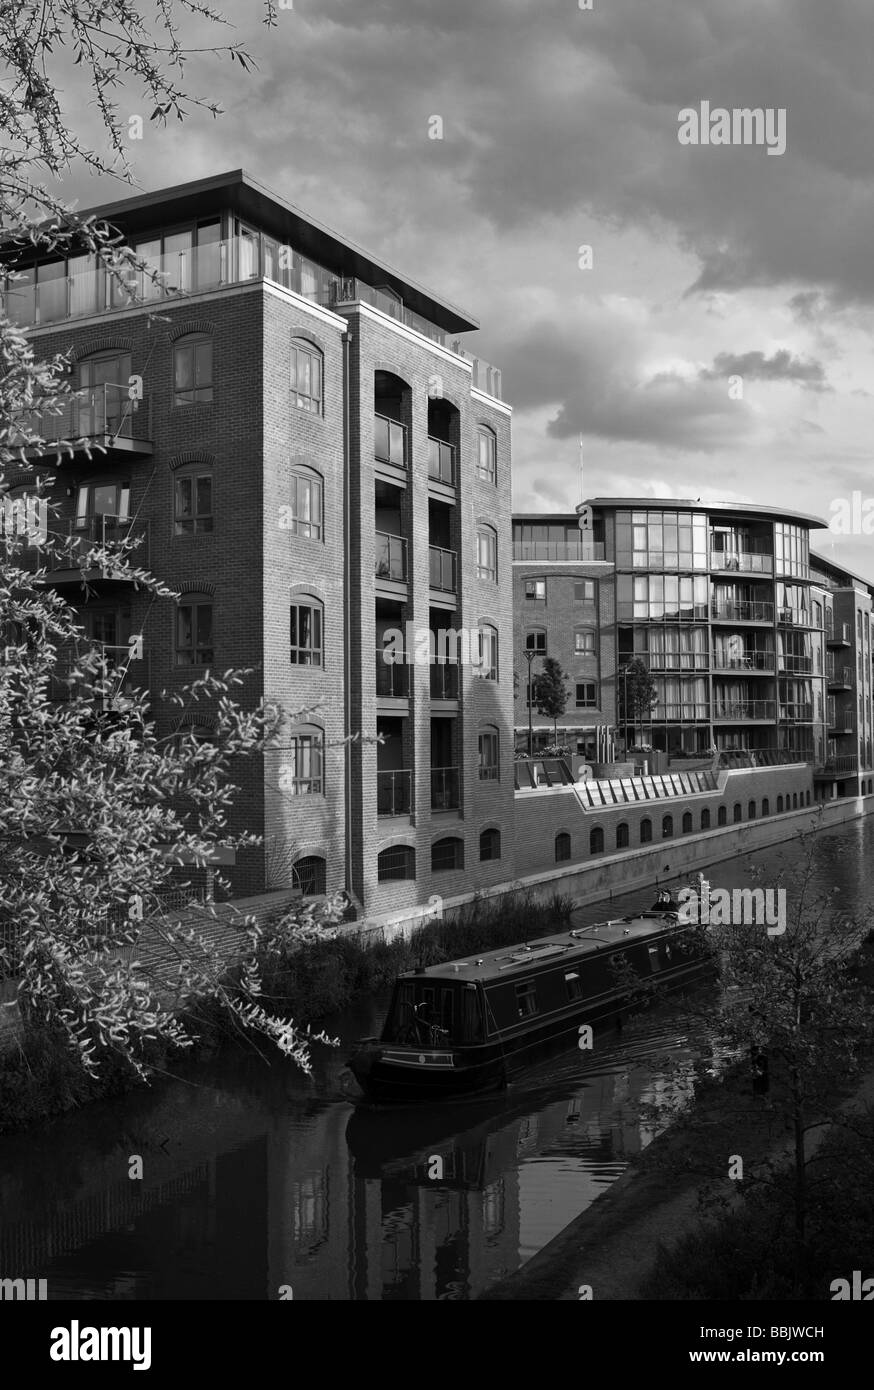 Schwarz / weiß Format Porträtbild des Kanals, ein Boot und eine moderne Wohnsiedlung Walton gut unterwegs in Oxford Stockfoto